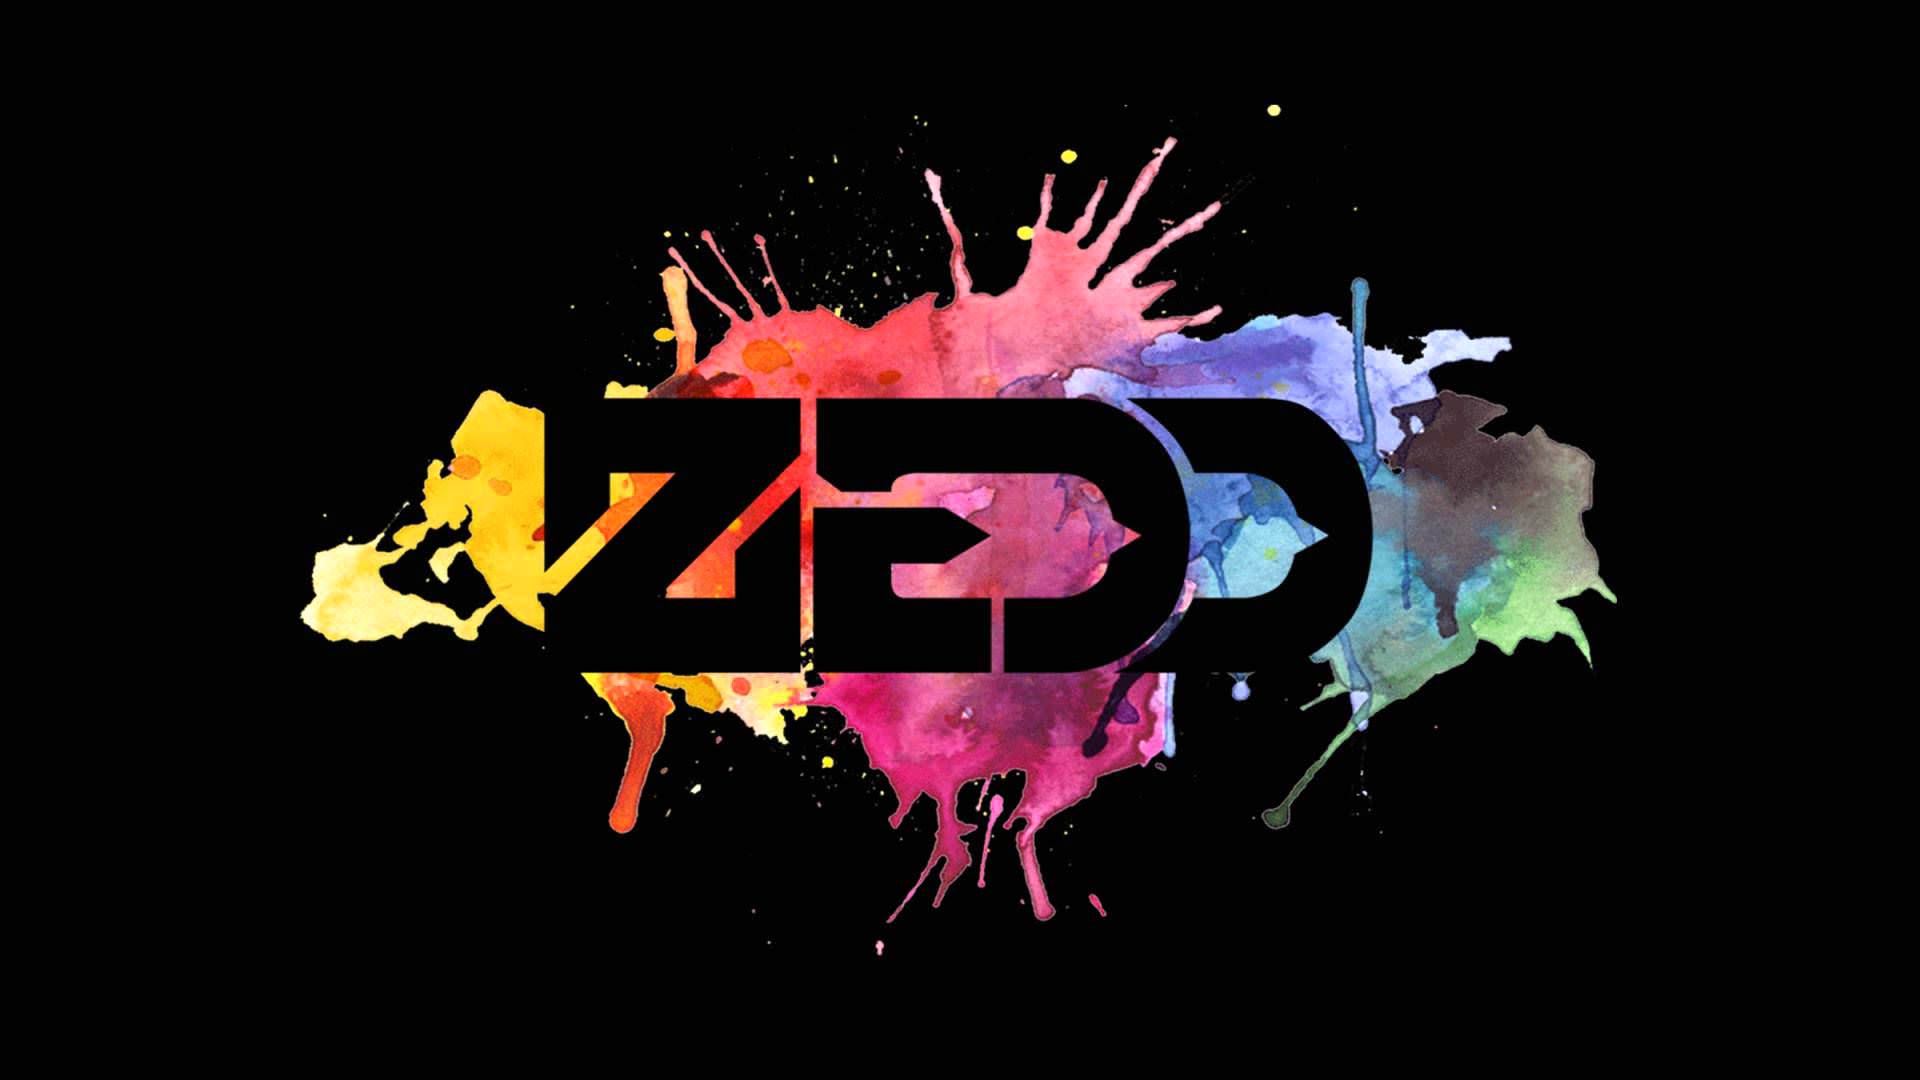 Zedd - Zedd Find You Remixes , HD Wallpaper & Backgrounds